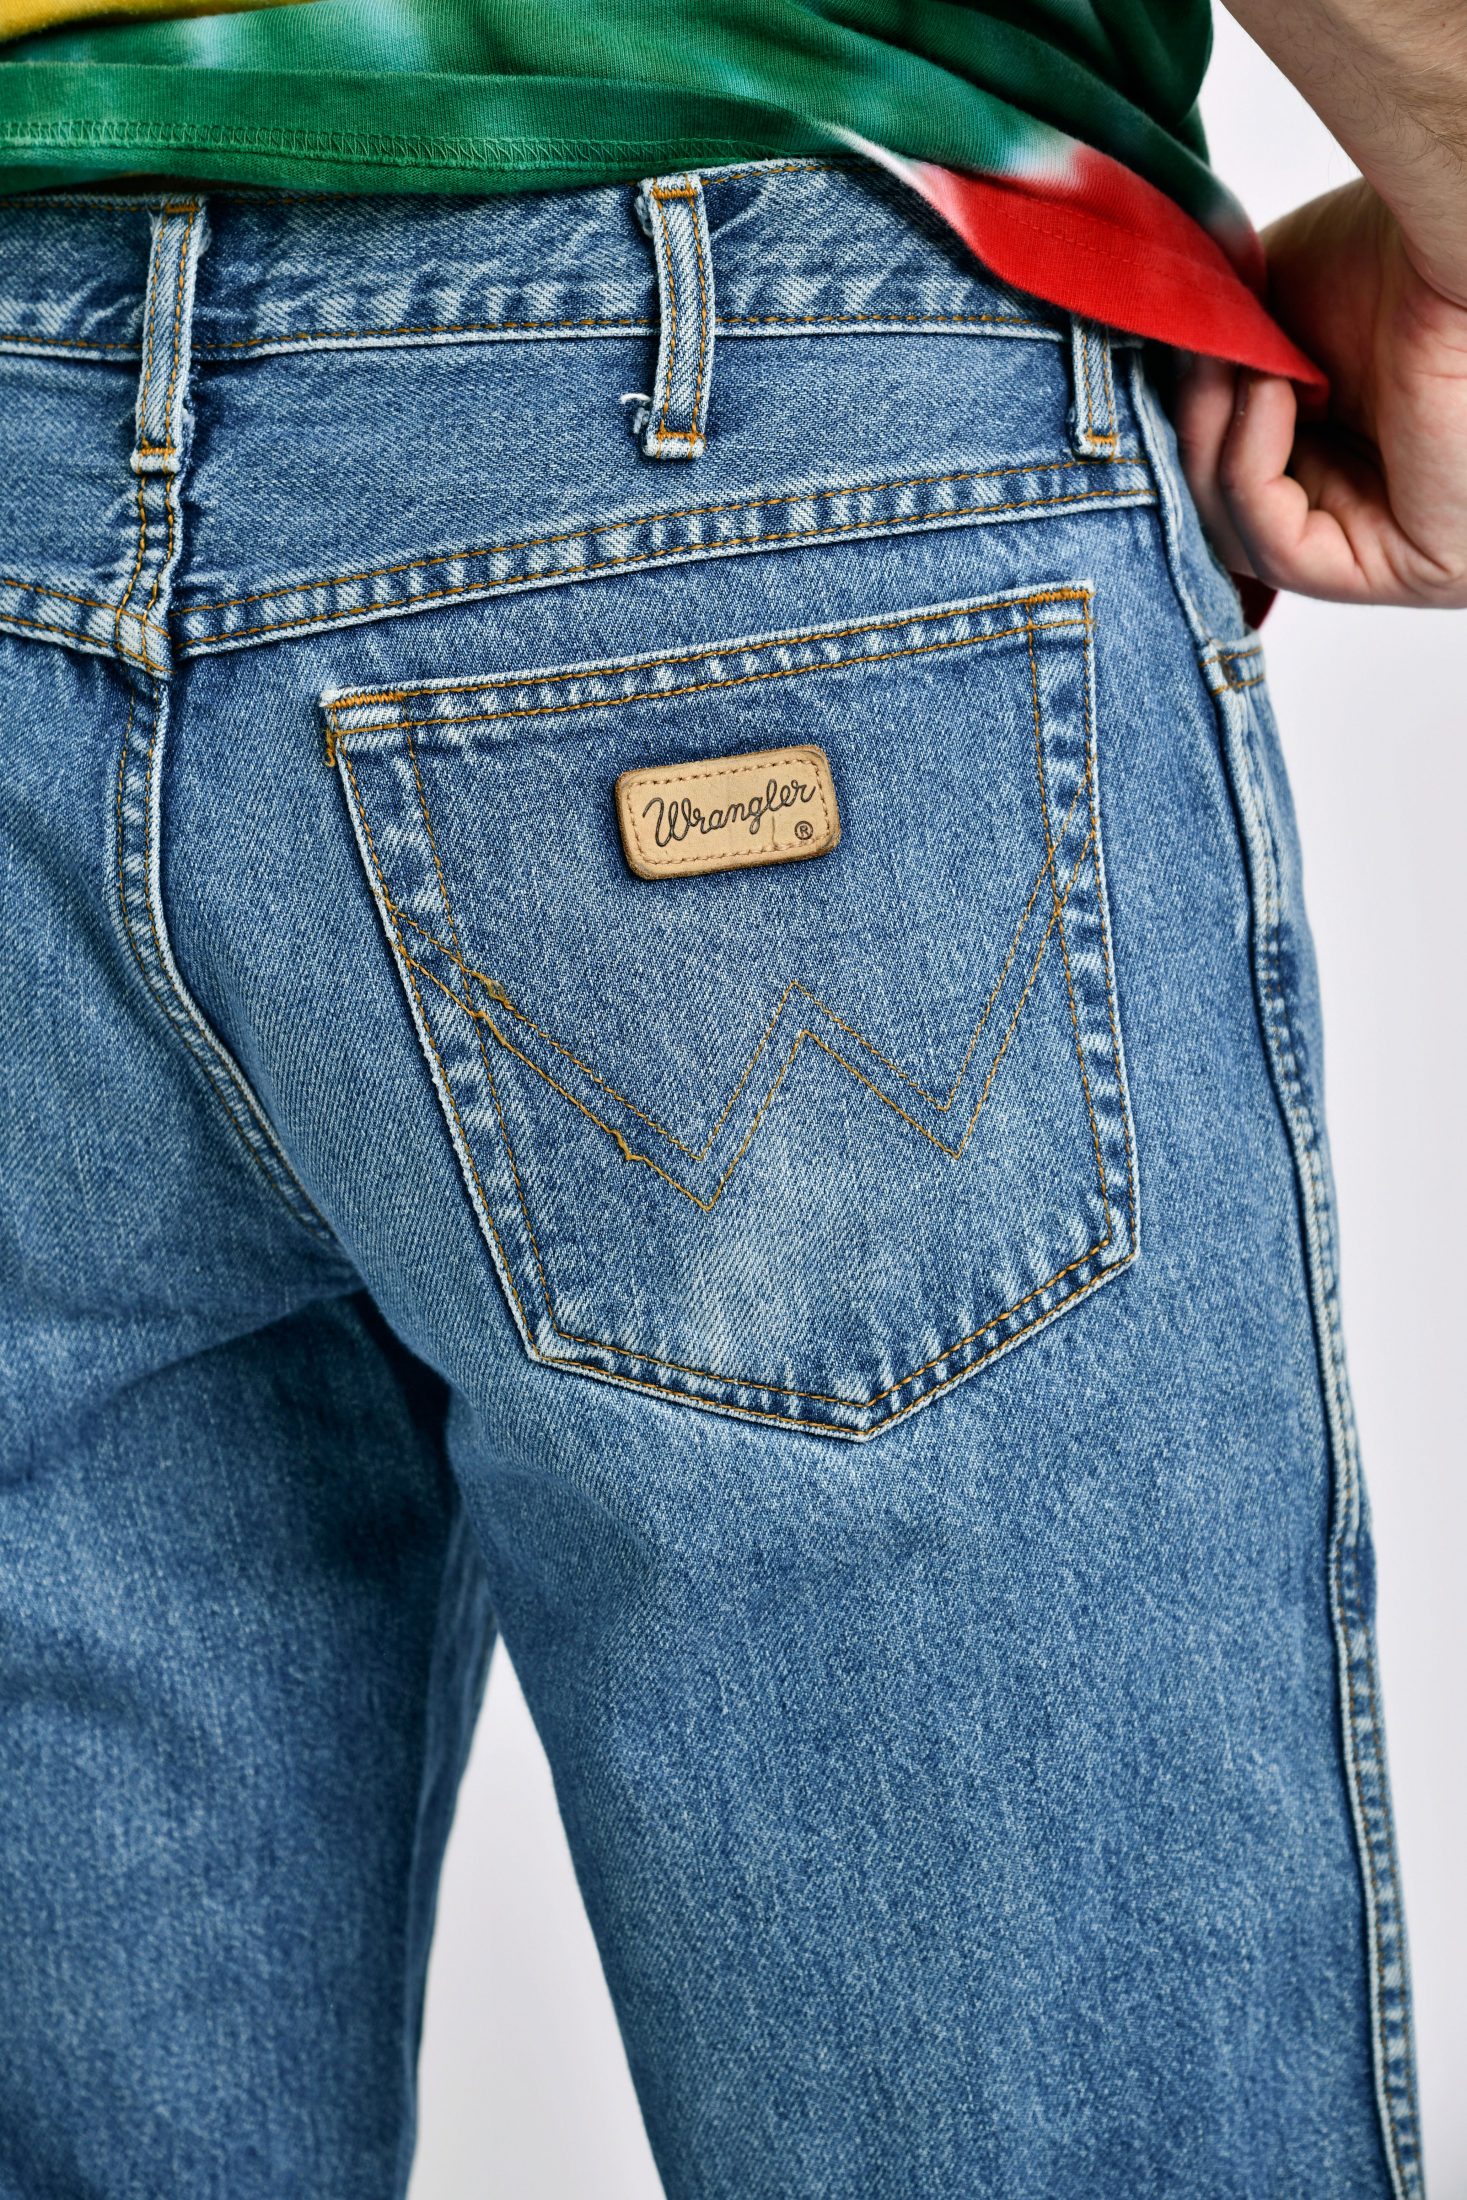 WRANGLER jeans vintage mens | Vintage clothes online for men